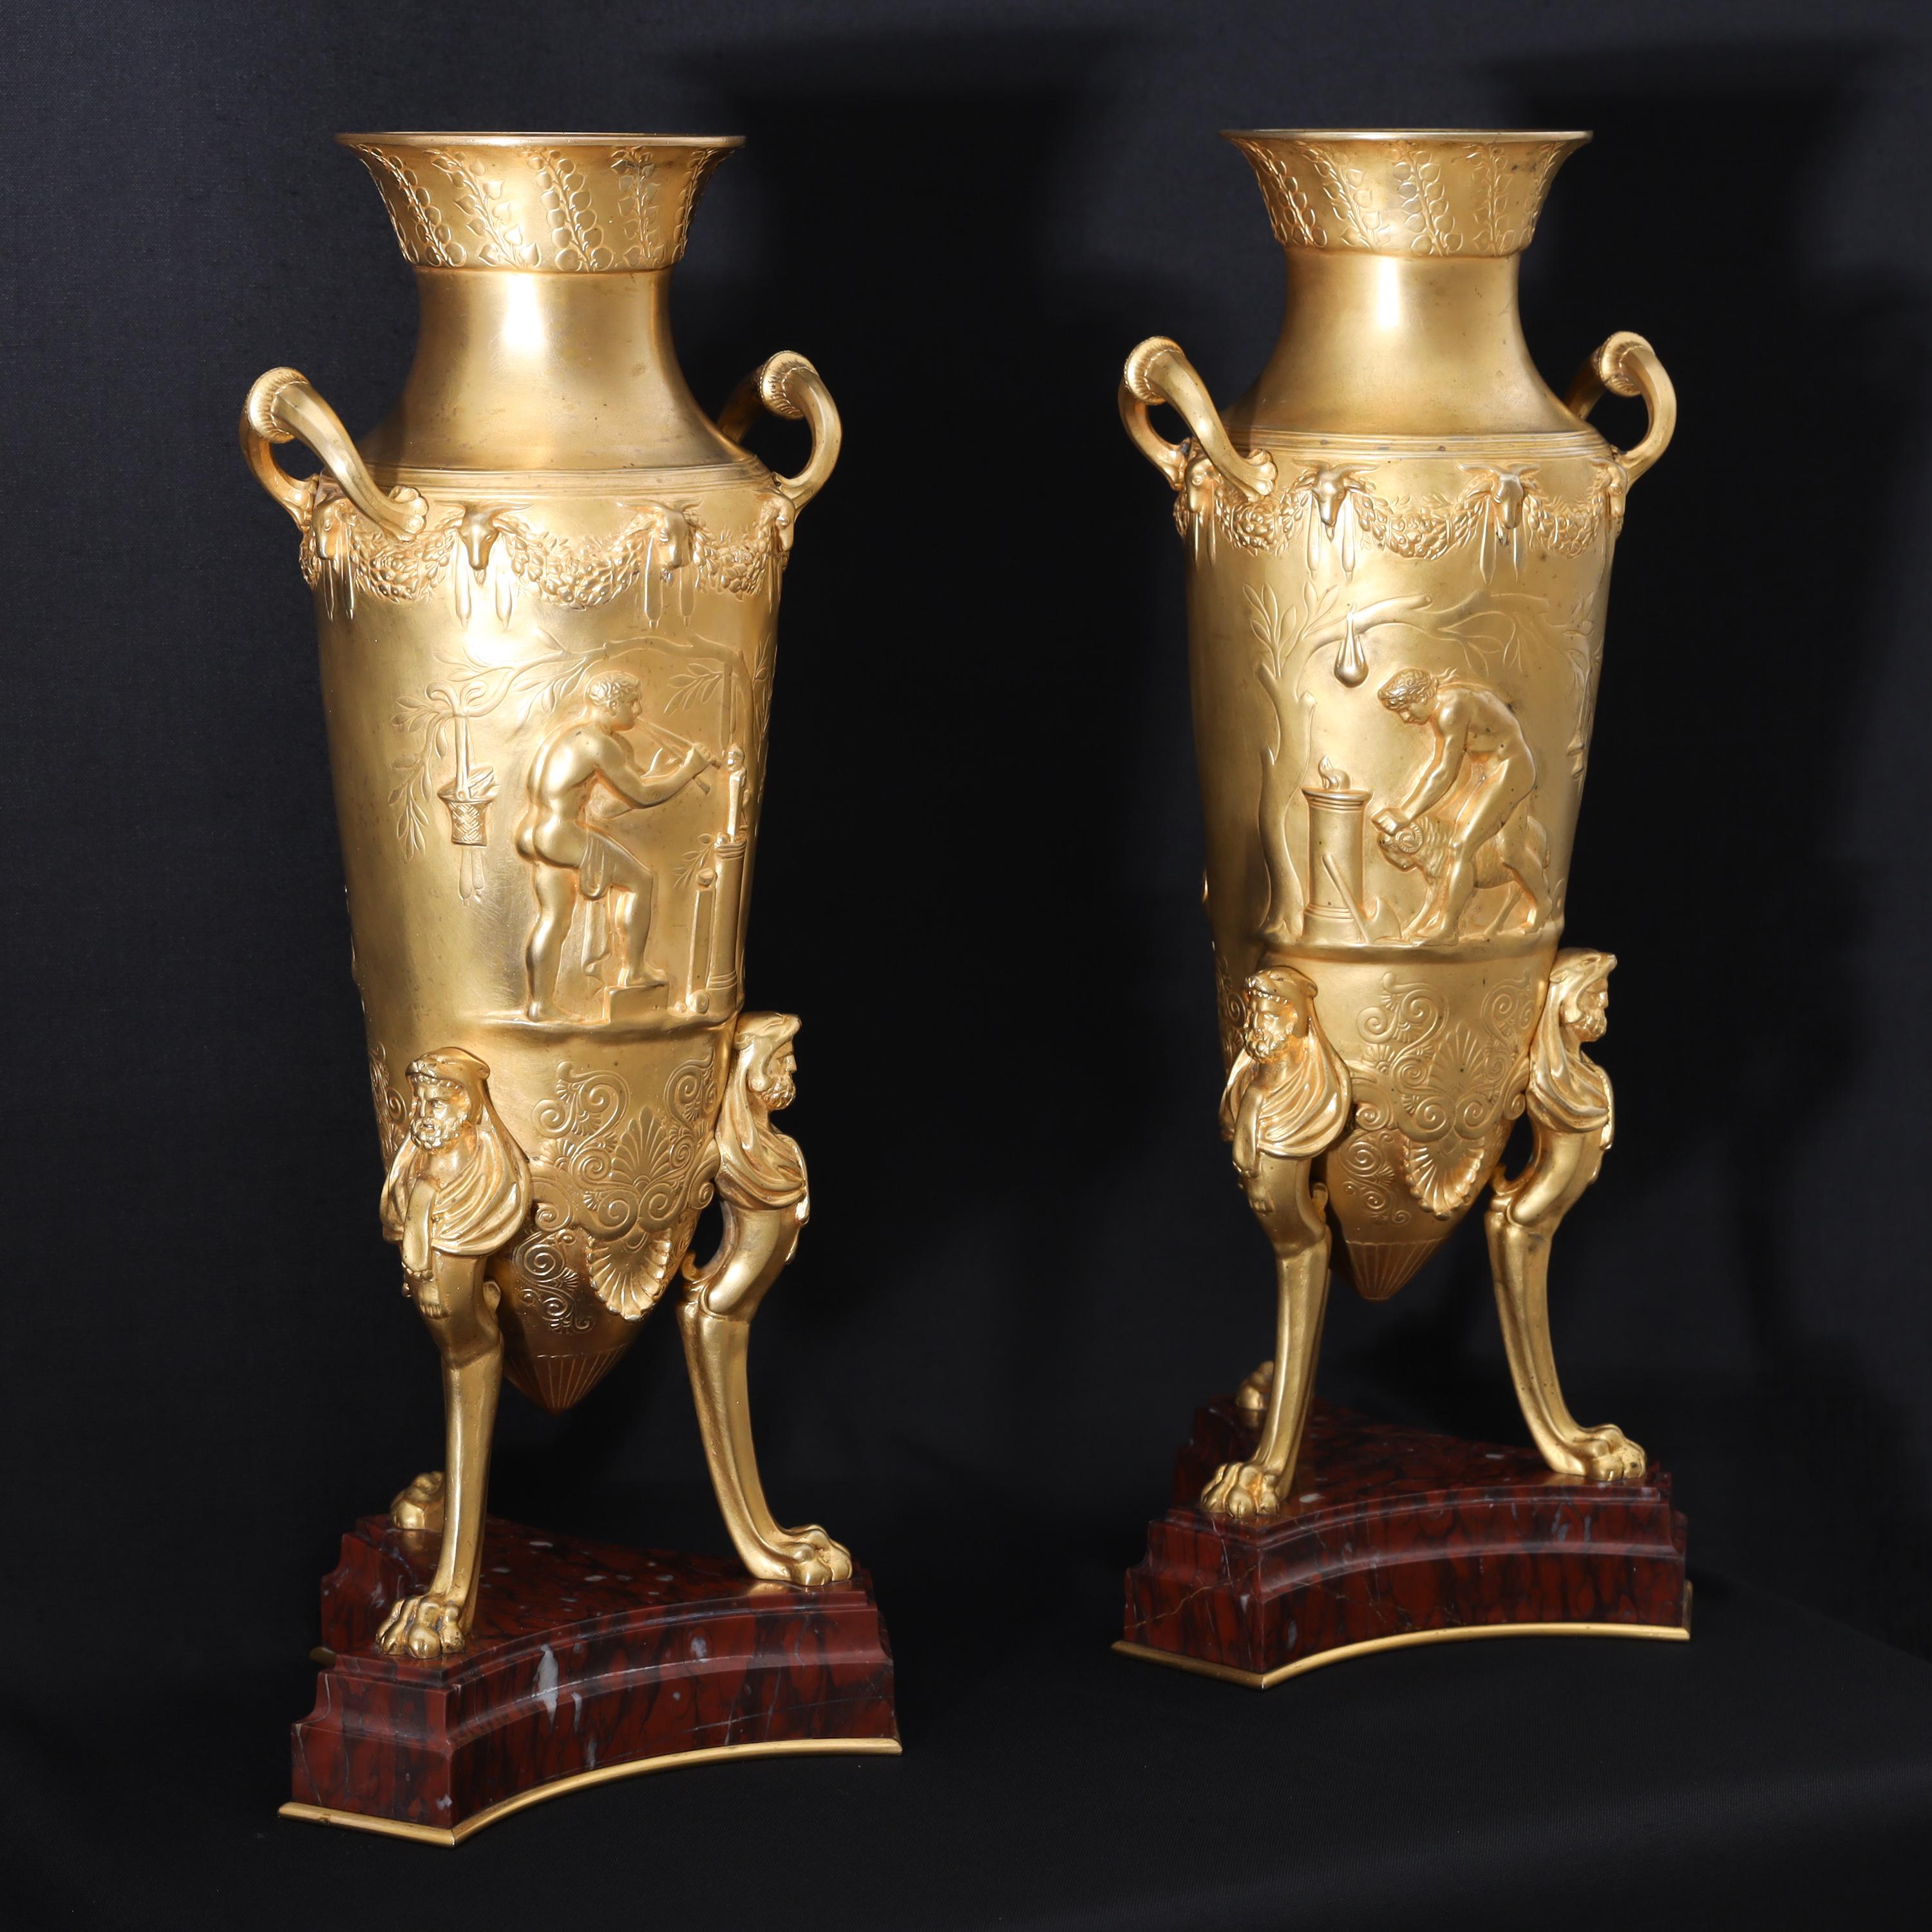 Paar feuervergoldete Bronze-Amphoren von Ferdinand Levillain (1837-1905) und Ferdinand Barbedienne (1810-1892) auf Sockeln aus rotem Marmor mit Kleeblatt. Die Vasen stehen auf Löwentatzenfüßen, an den Wänden befinden sich Herkules-Atlanten und